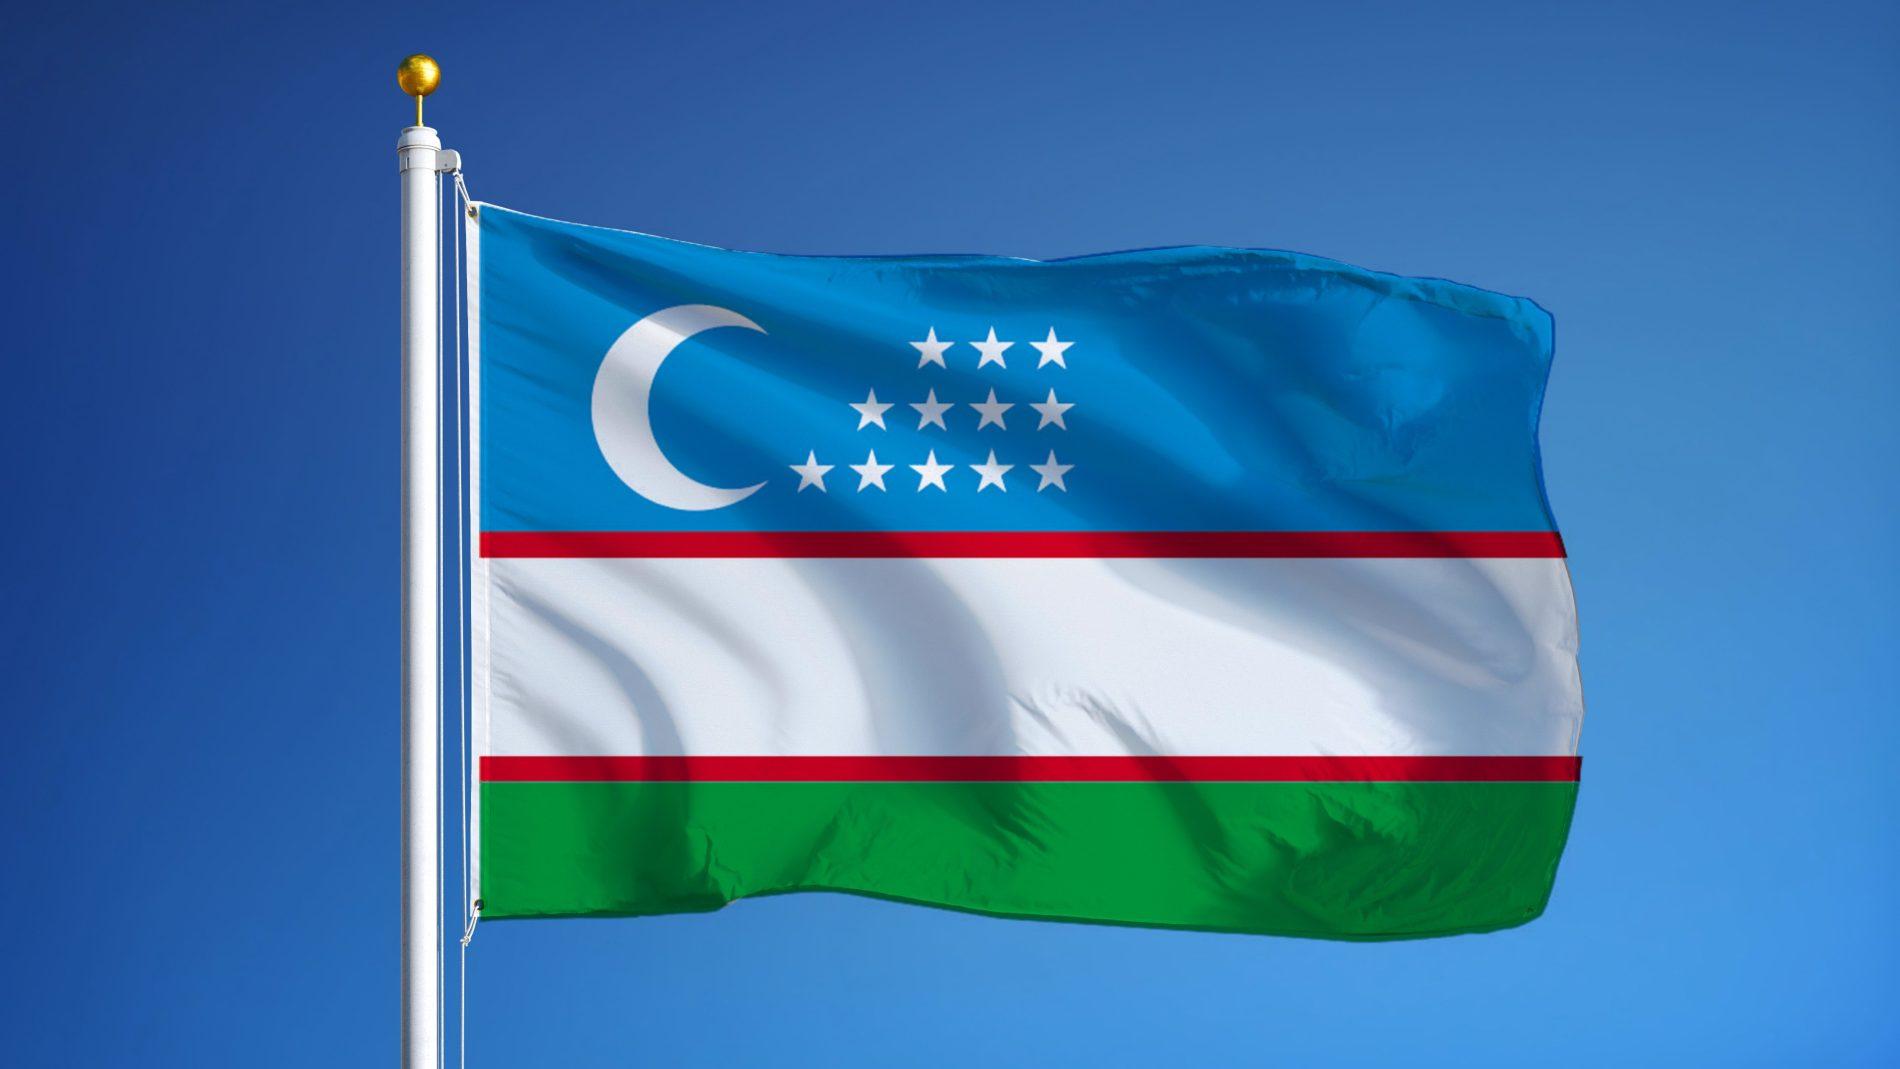 Bayroq rasmi. Флаг Республики Узбекистан. Узбекистан Республика БАЙРОГИ. Флак ускибистан. Узбекистан флаг Узбекистана.